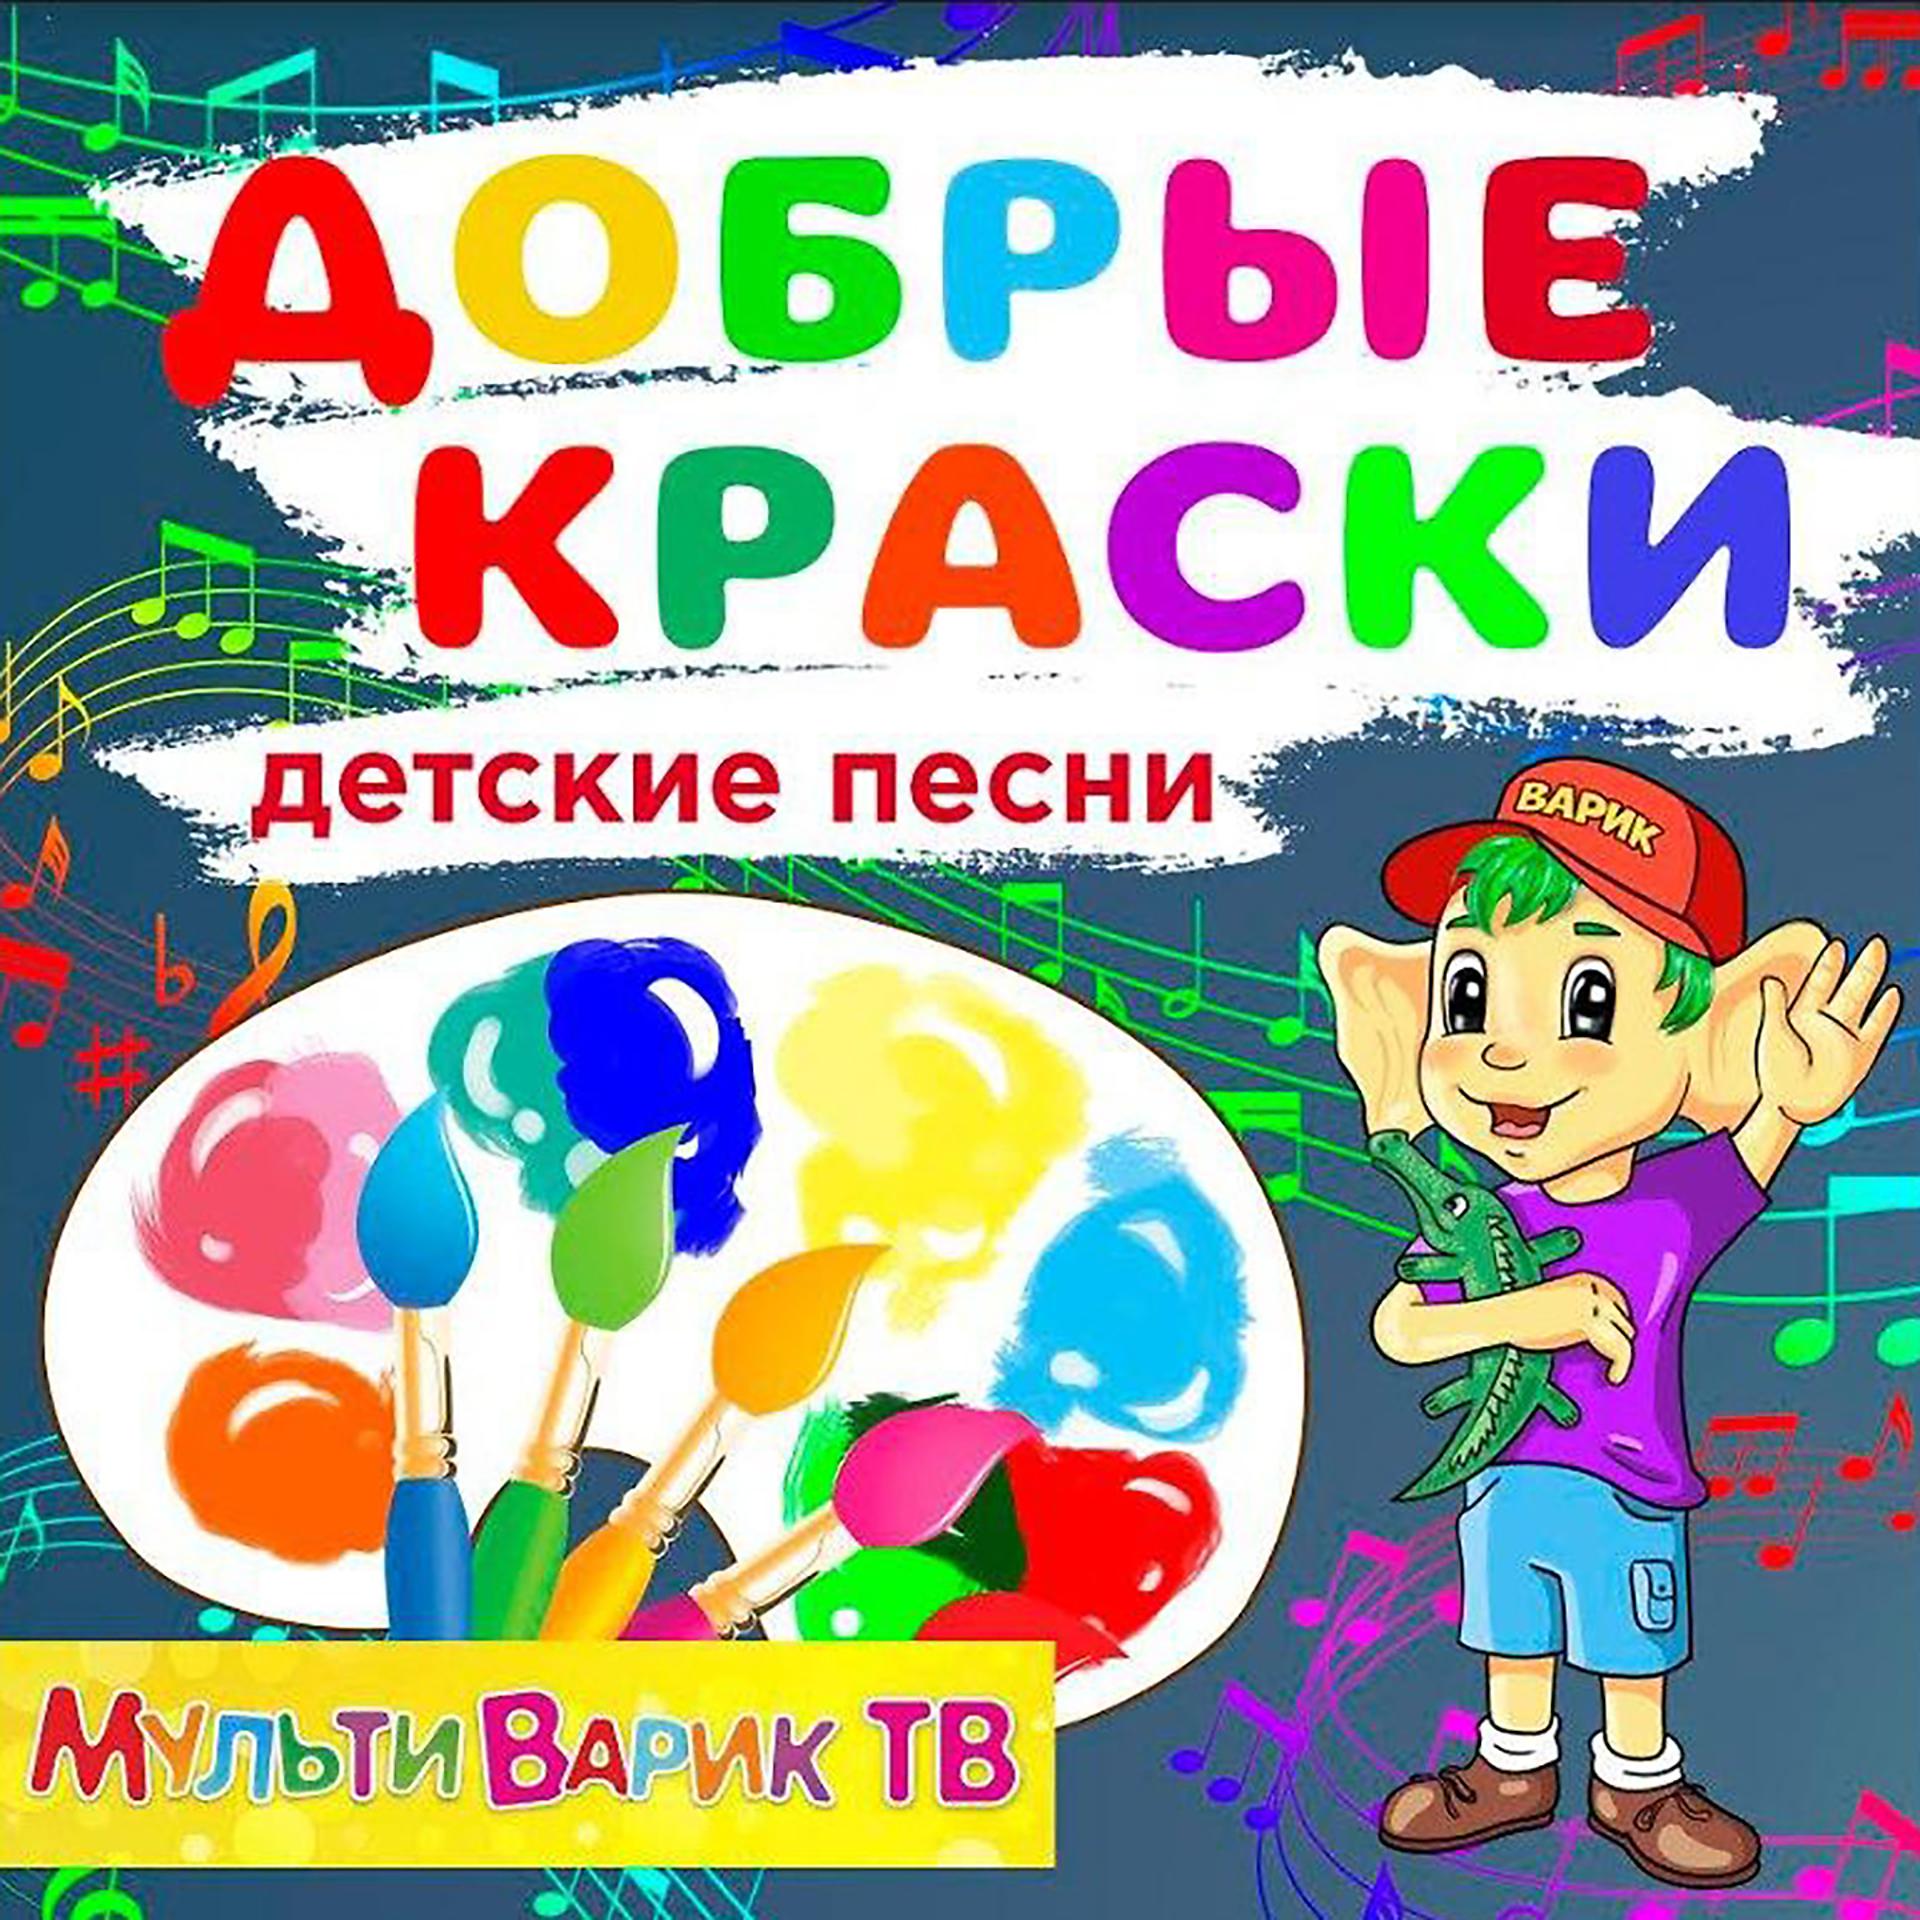 Постер к треку МУЛЬТИВАРИК ТВ - Единорожка